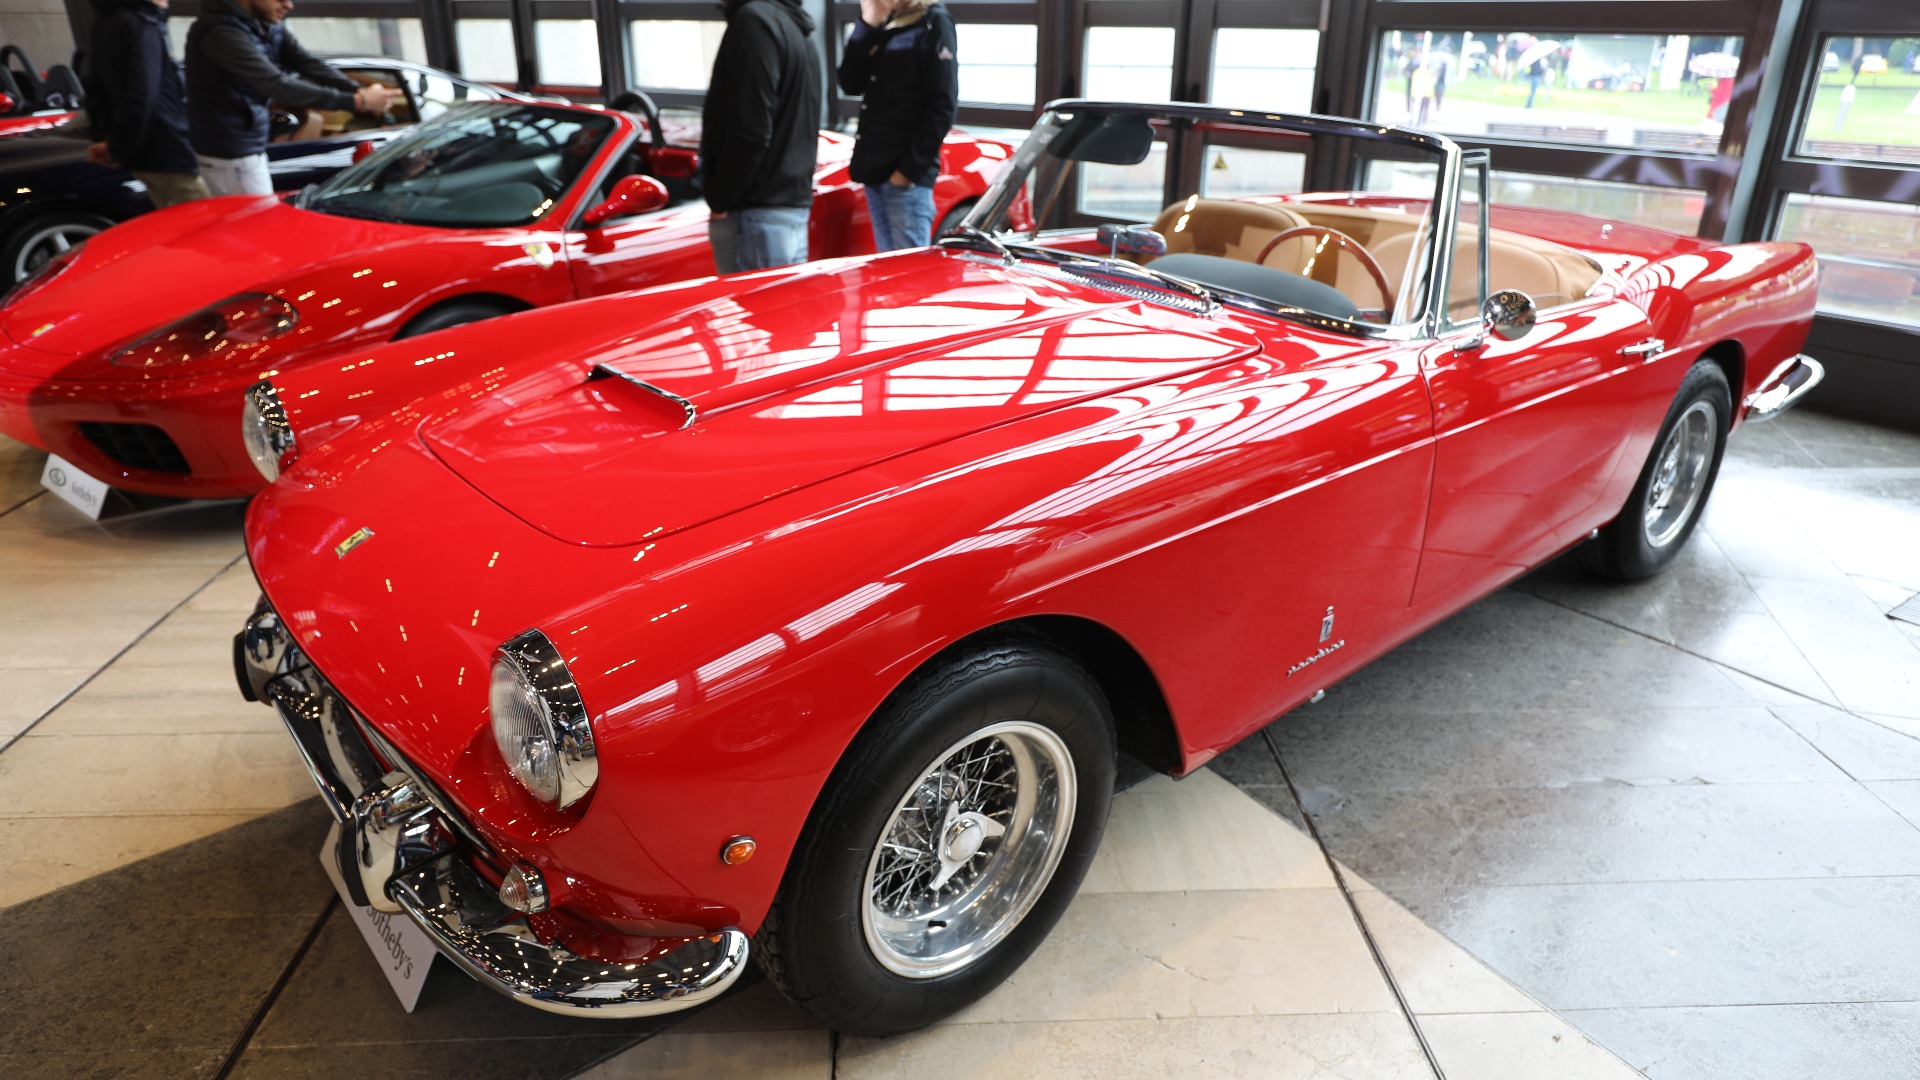 1961 Ferrari 250 GT Cabriolet - 14 896 663 kr